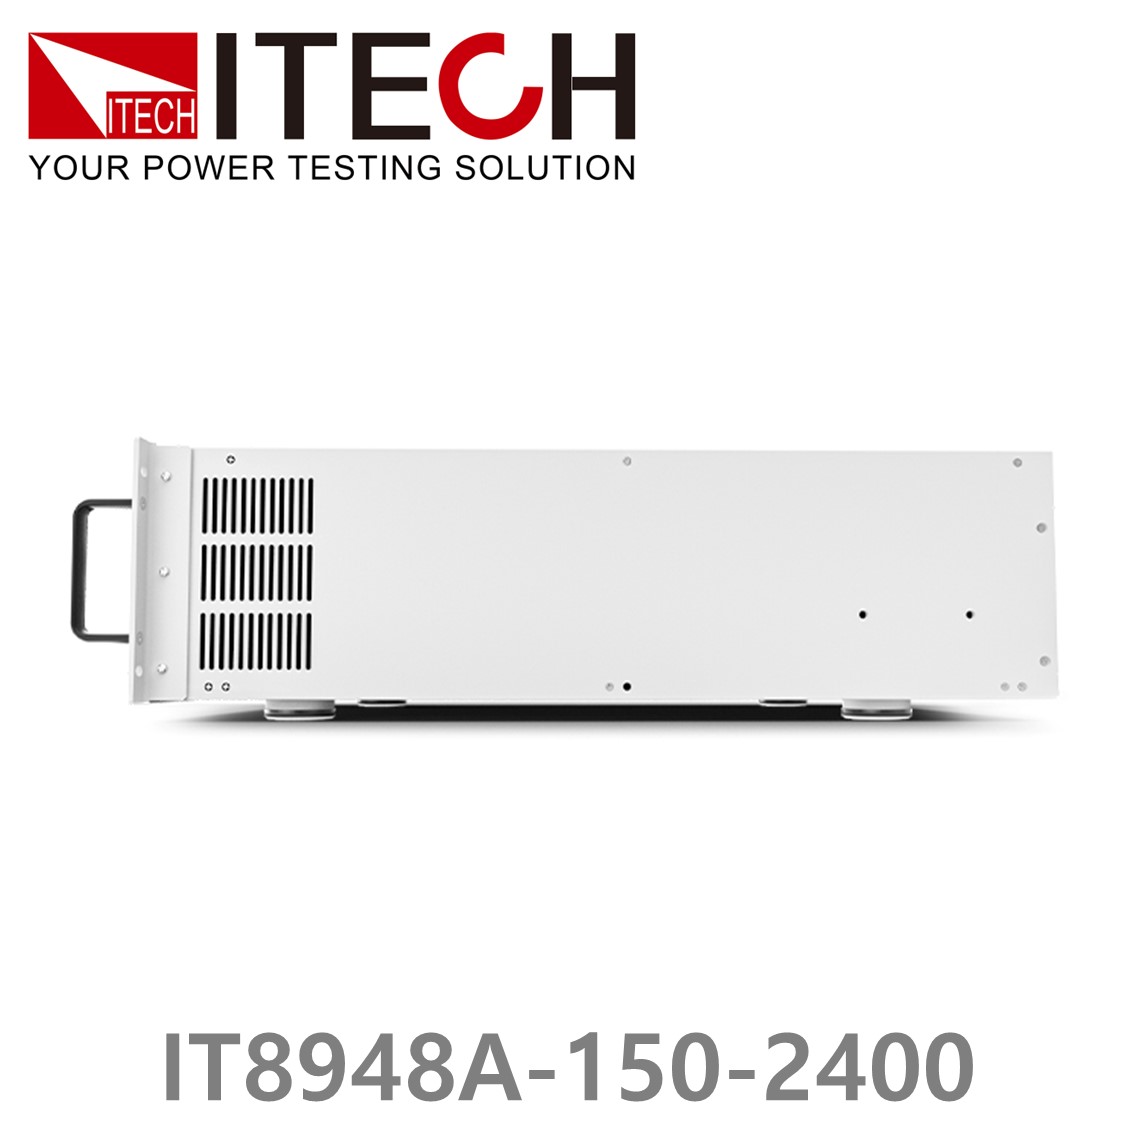 [ ITECH ] IT8948A-150-2400  고성능 고전력 DC 전자로드 150V/2400A/48kW (37U)